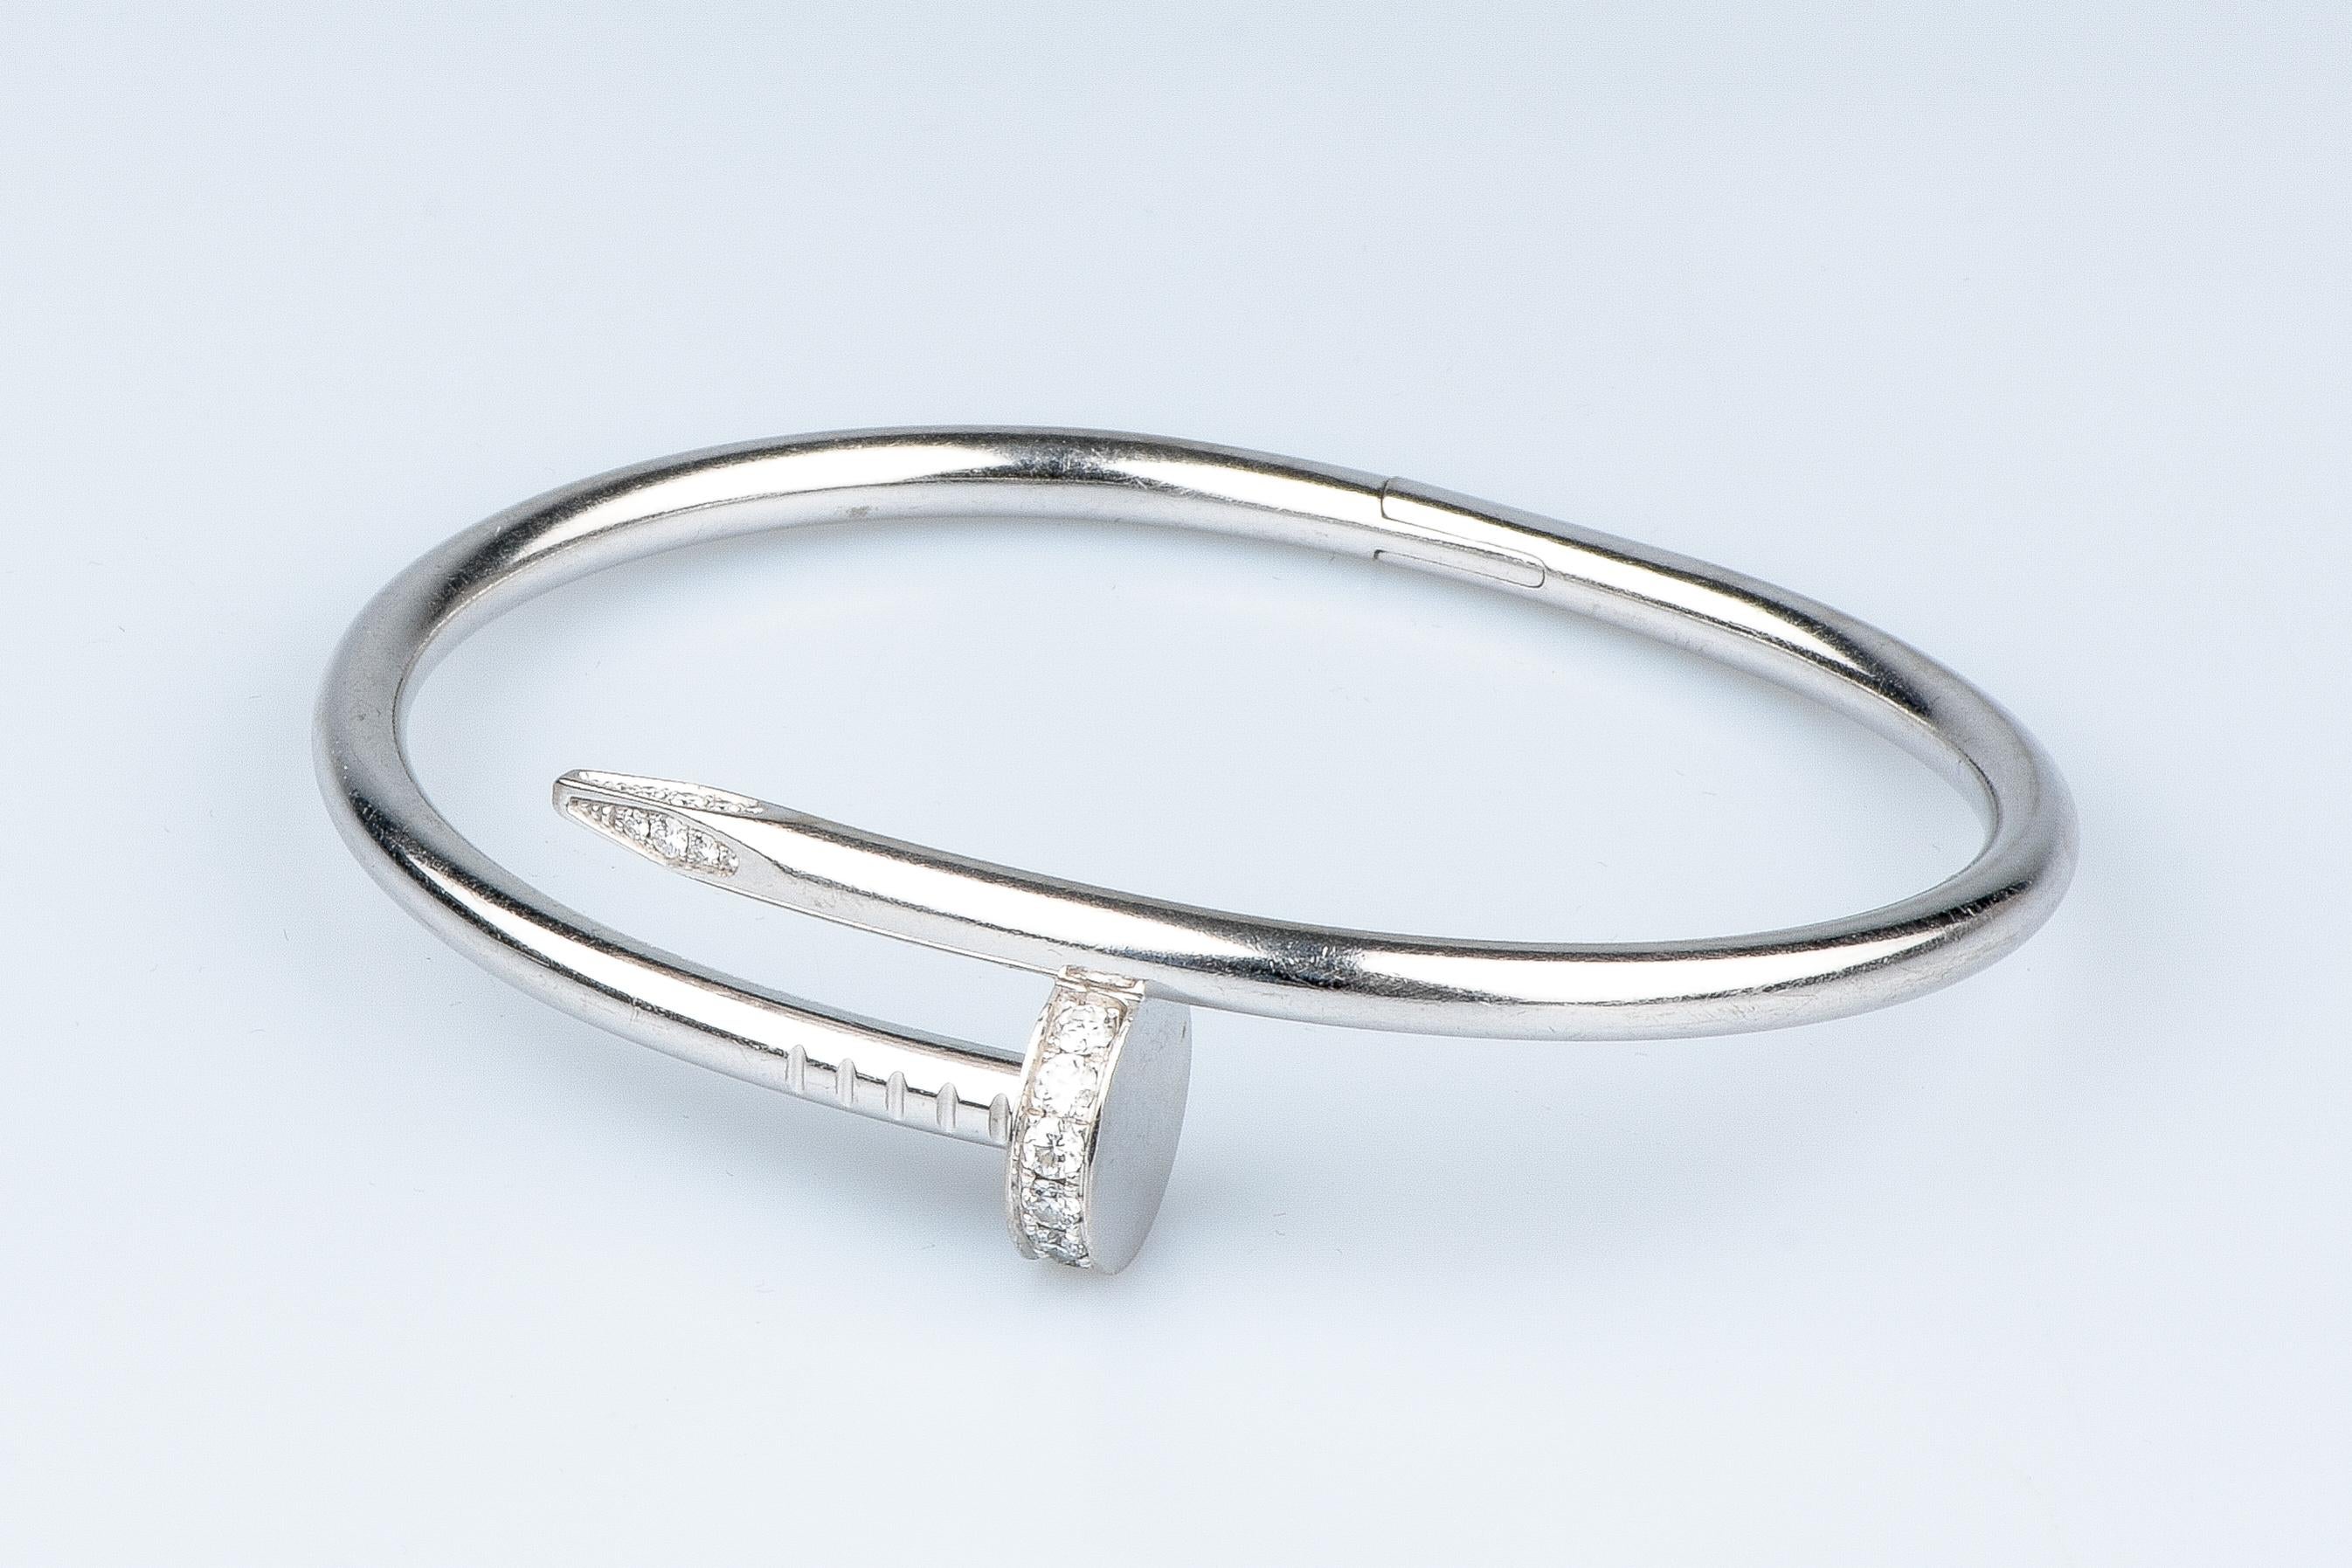 Cartier Juste un Clou Bracelet certified 0.58 carat brillant cut diamonds 5